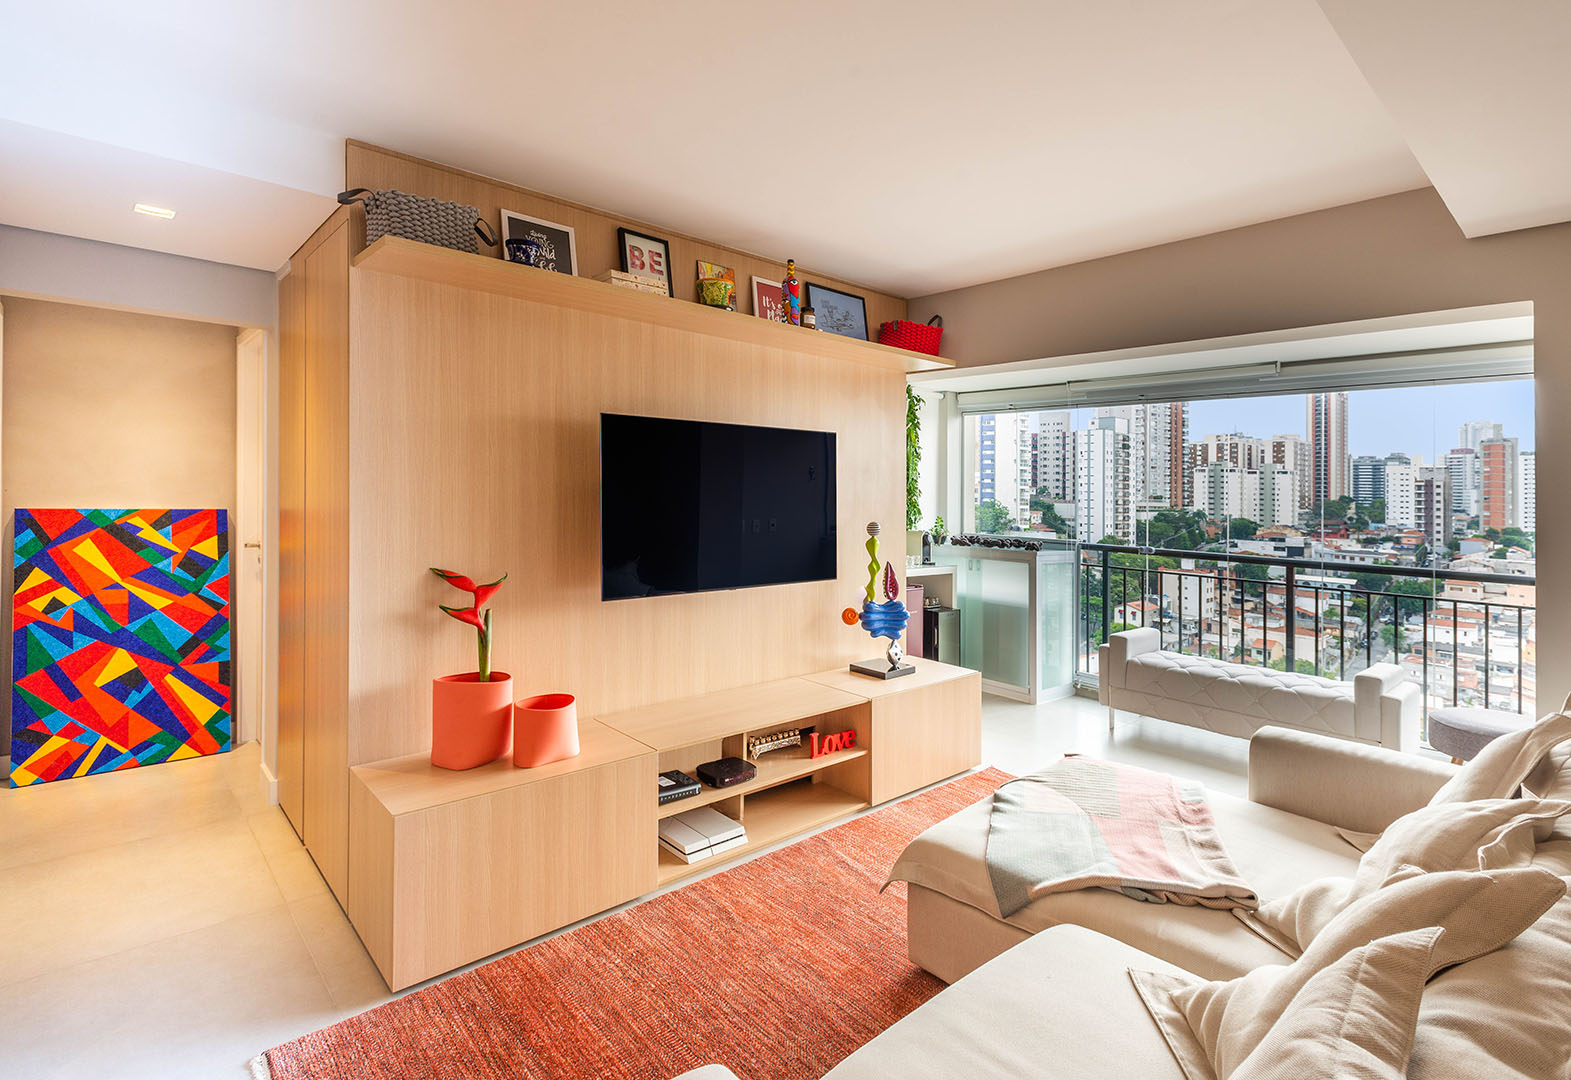 Apartamento de 69 m² traz base neutra e contemporânea